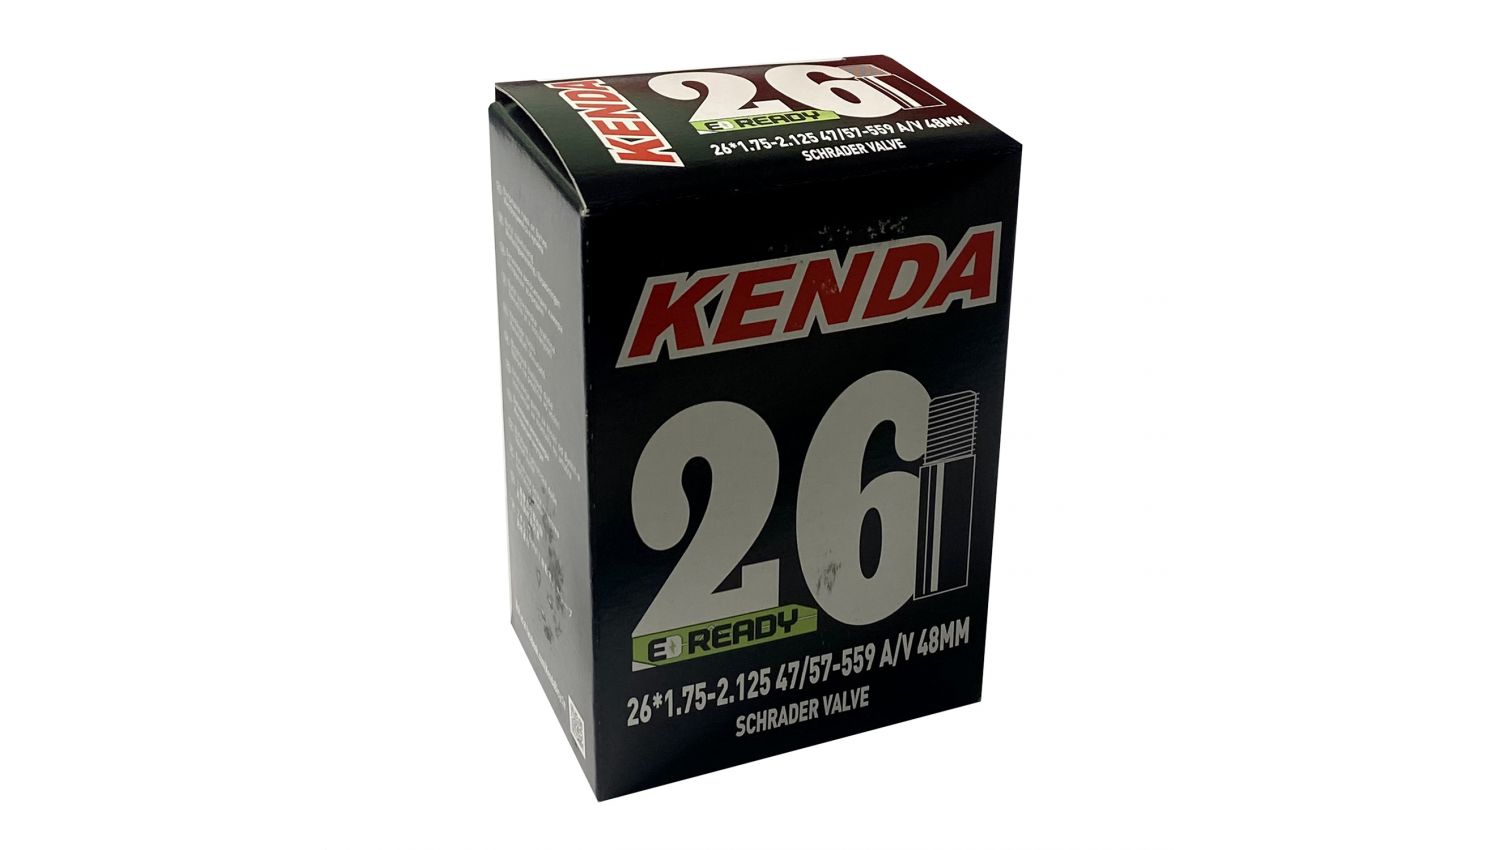 Фотография Камера KENDA 26x1.75-2.125, A/V-48 мм, 47/57-559, в коробке